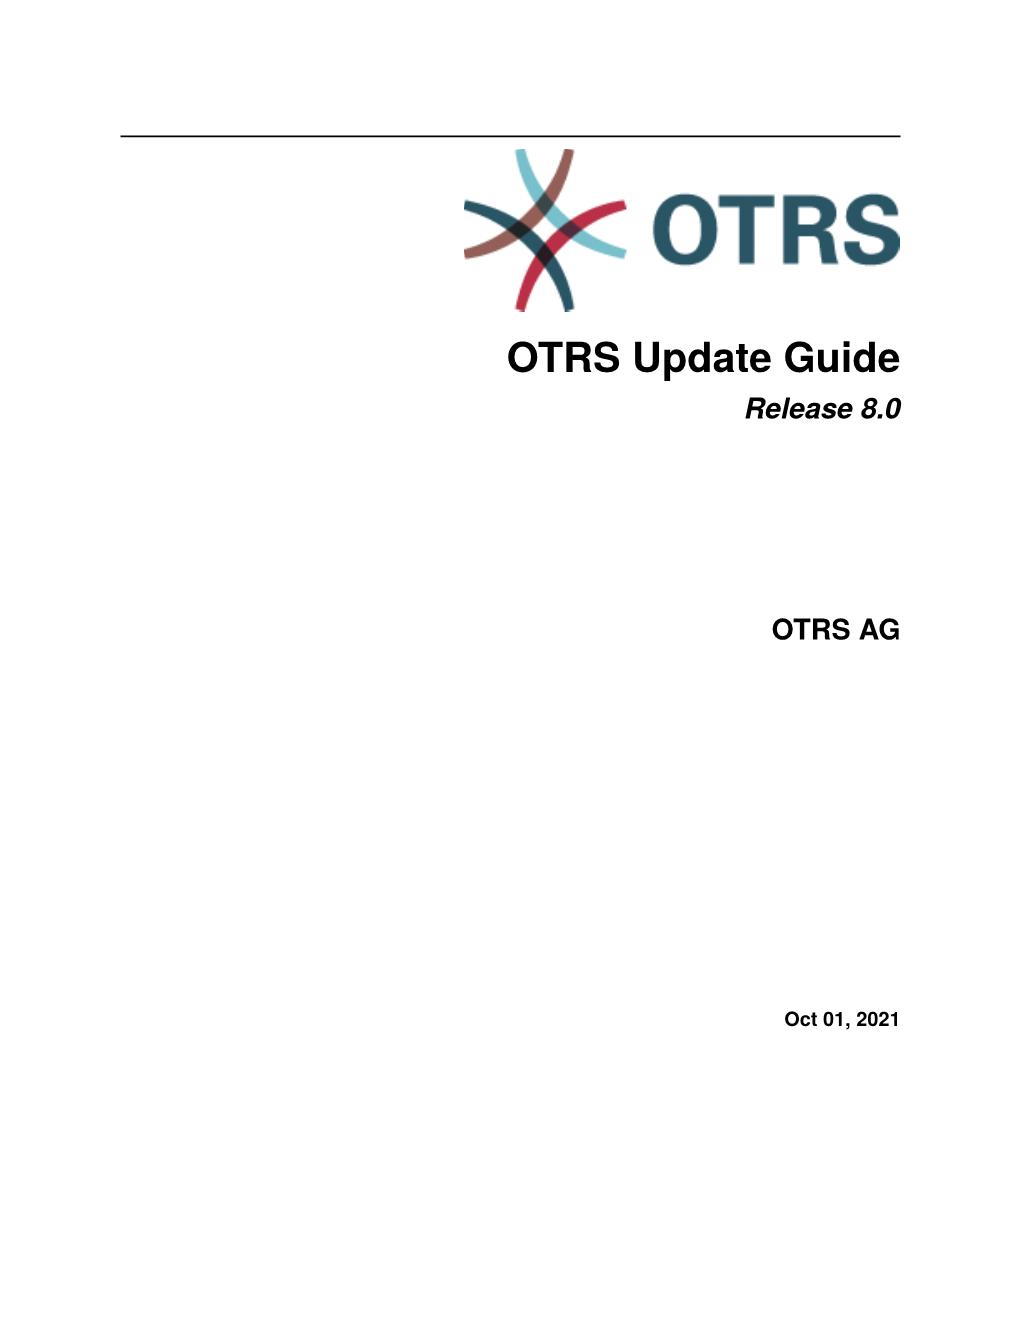 OTRS Update Guide Release 8.0